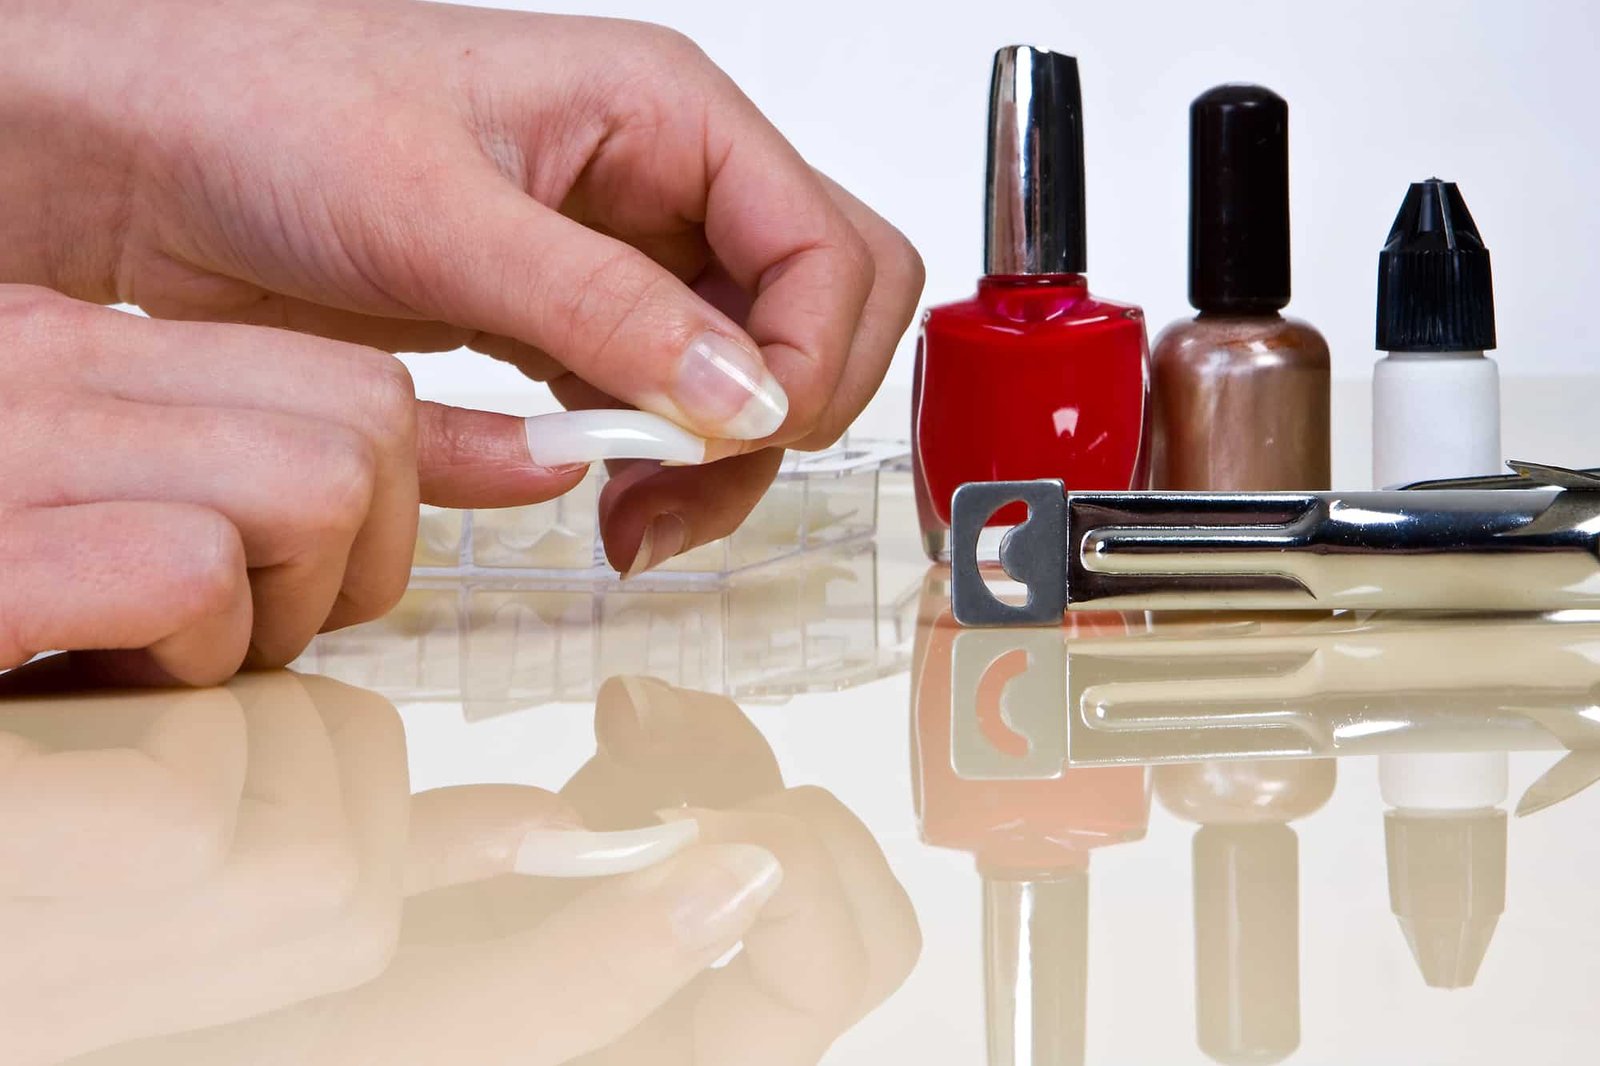 putting on false nails with nail glue and nail polish